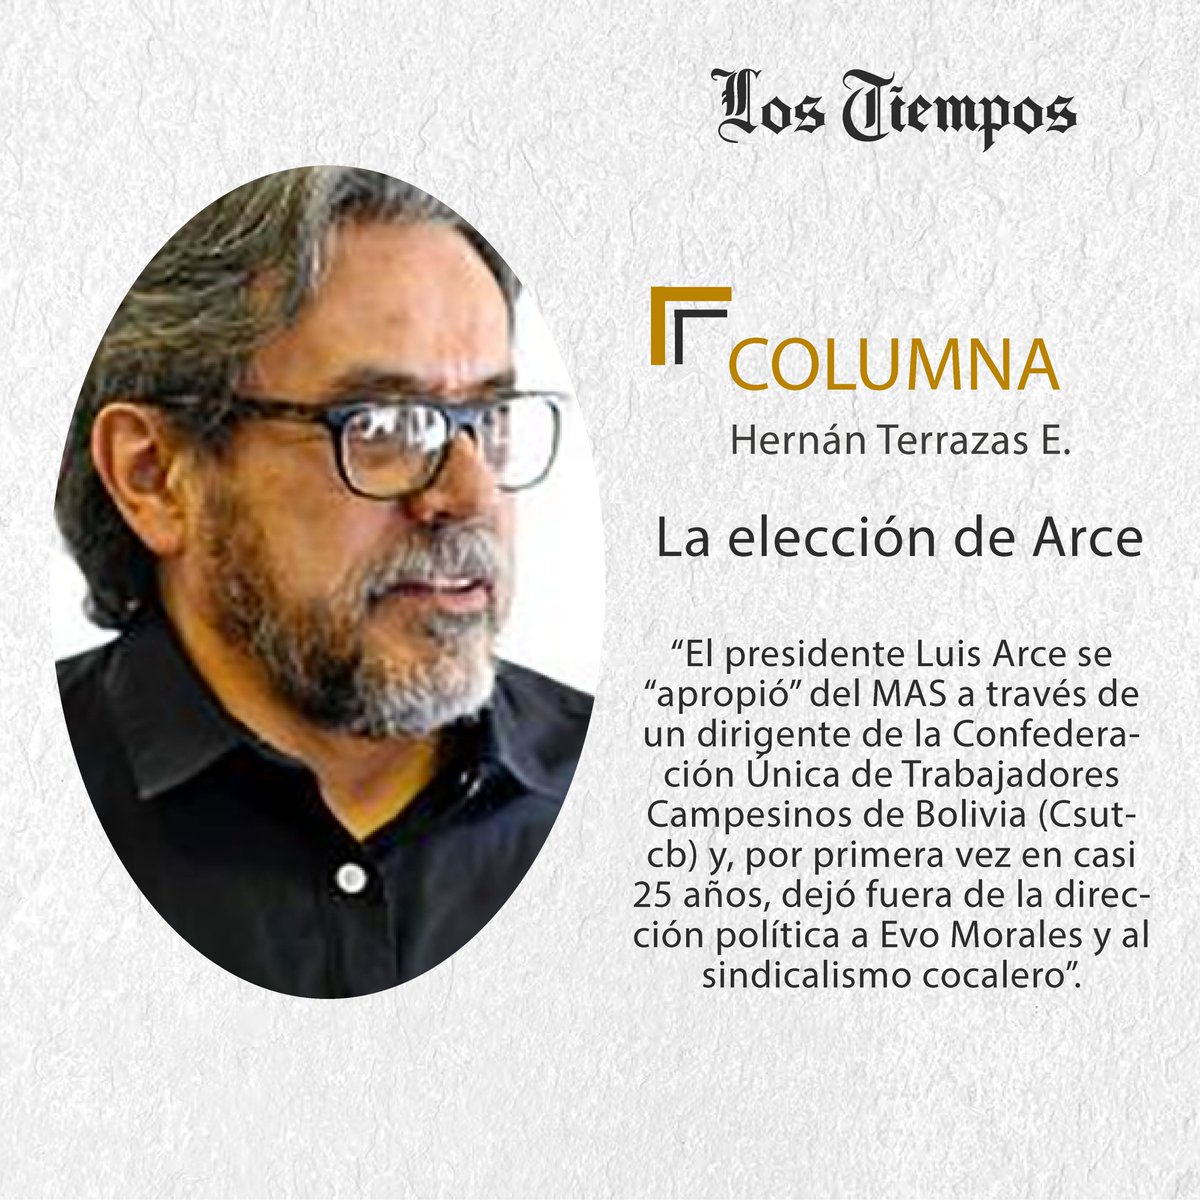 #LTColumna #Puntos de Vista
Lea la columna de Hernán Terrazas E.
👉 tinyurl.com/mr2pakdb